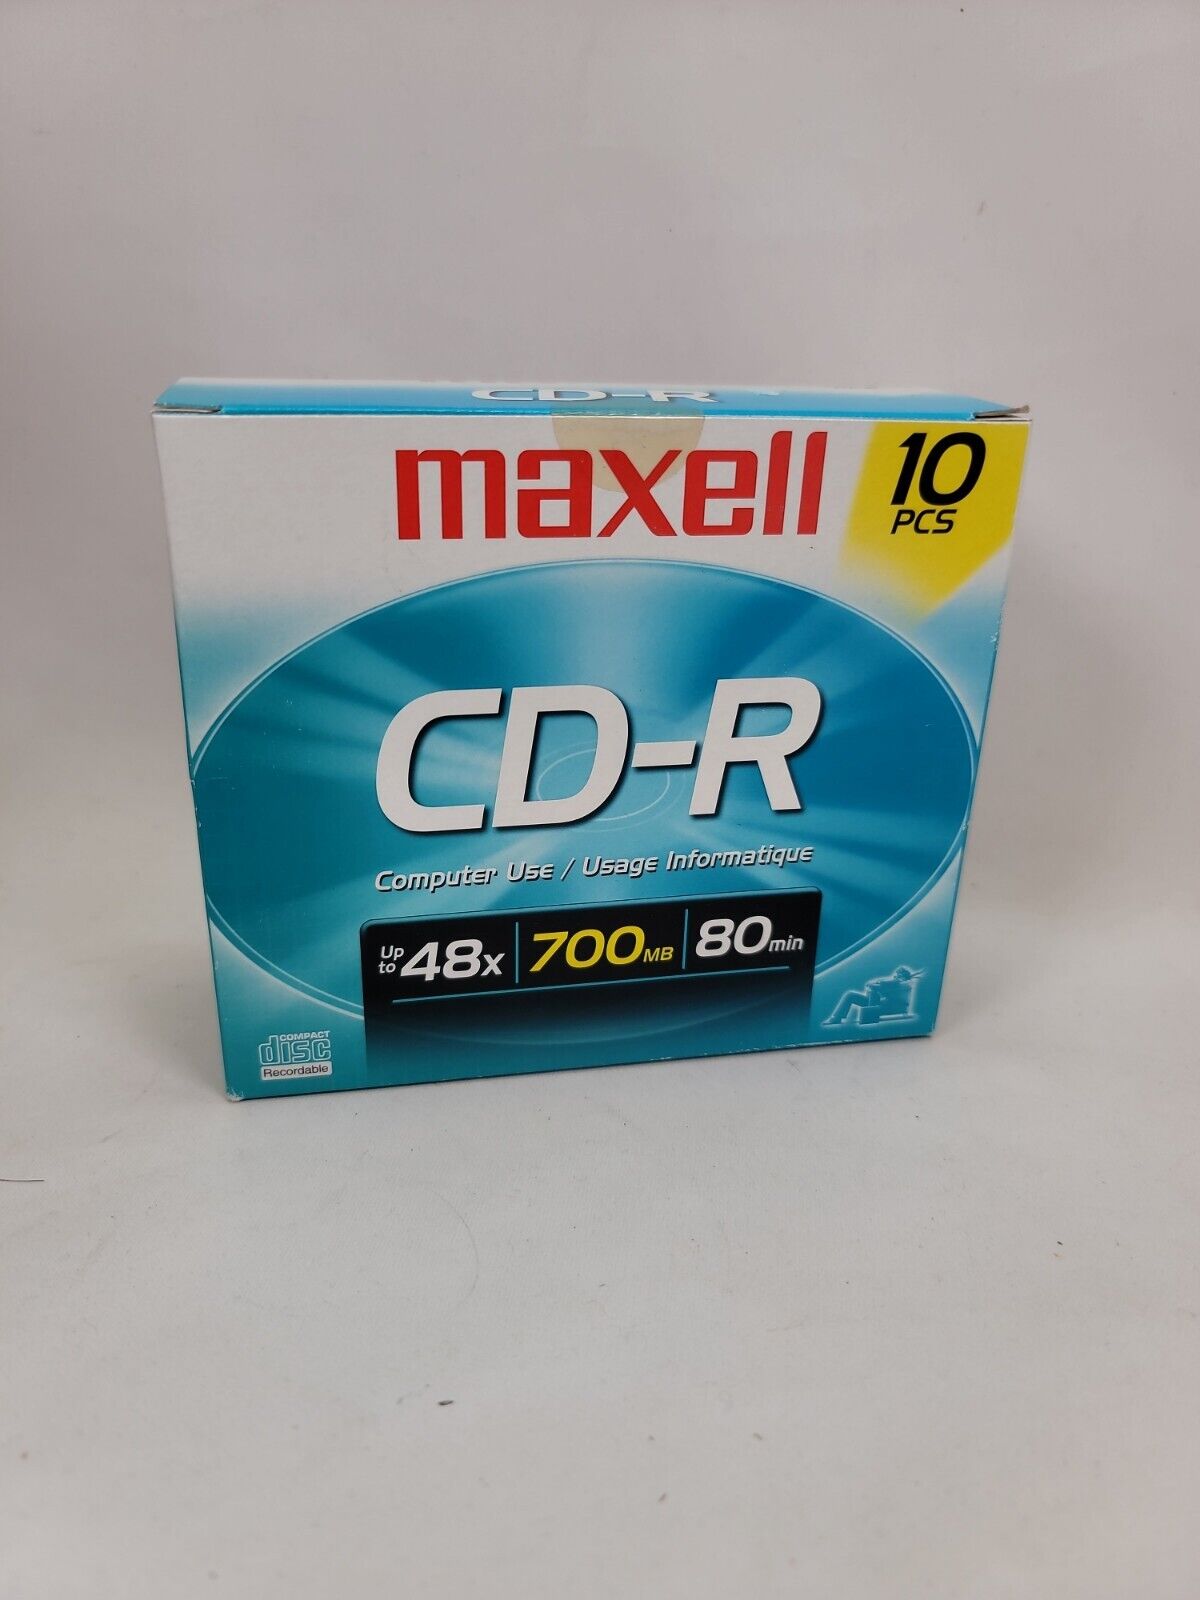 Maxell CD-R Discs, 700MB/80min, 48x, w/Slim Jewel Cases, 10/Pack (MAX648210)